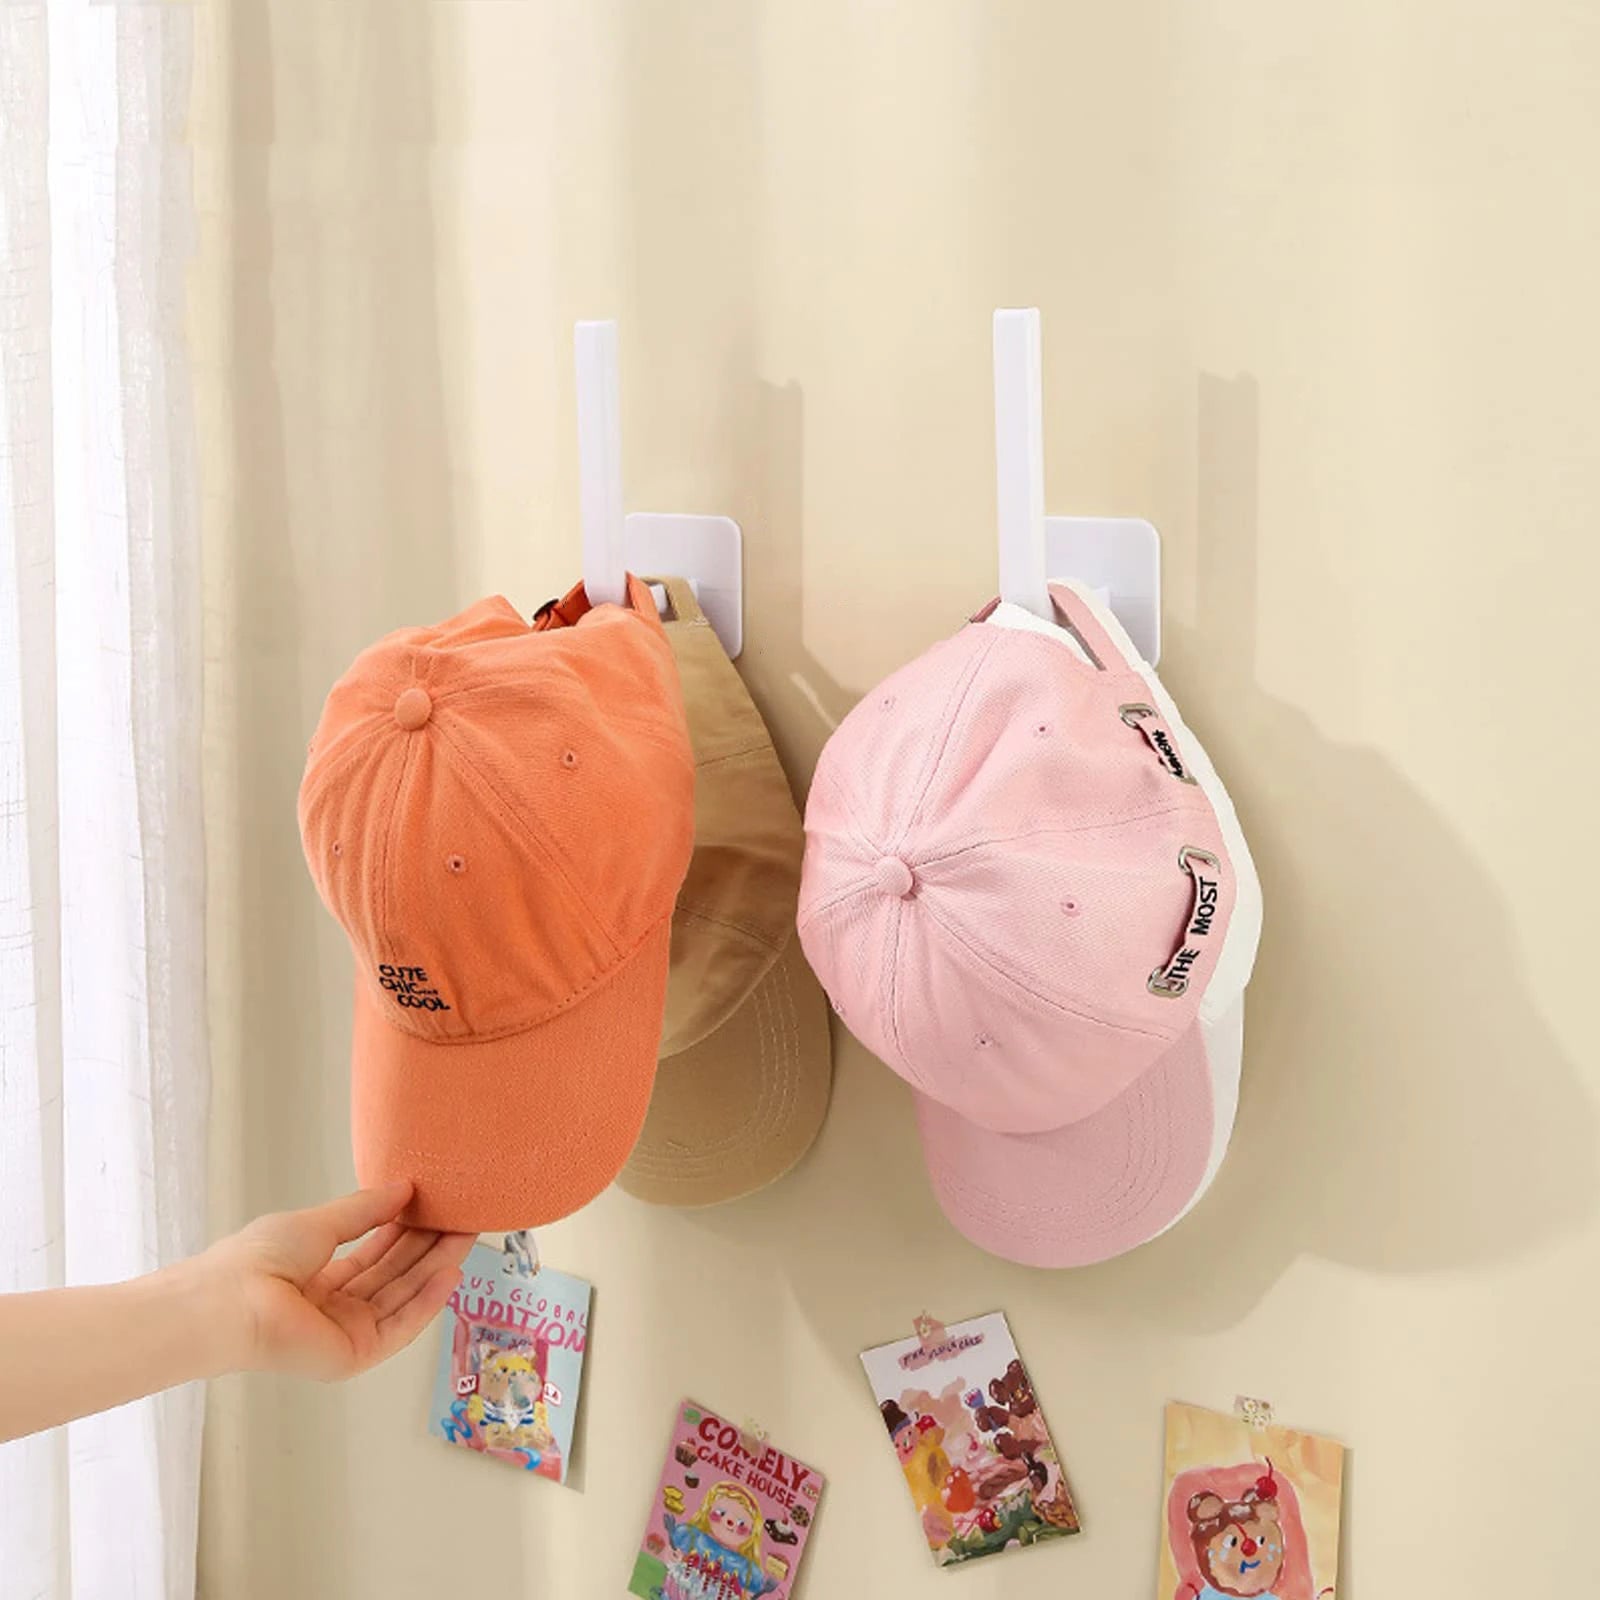 Cappellatura per cappelli per tappi da baseball ganci per cappelli adesivi per berretto da parete Organizzatore del cappuccio senza perforazione per perforazione per le porte dell'armadio